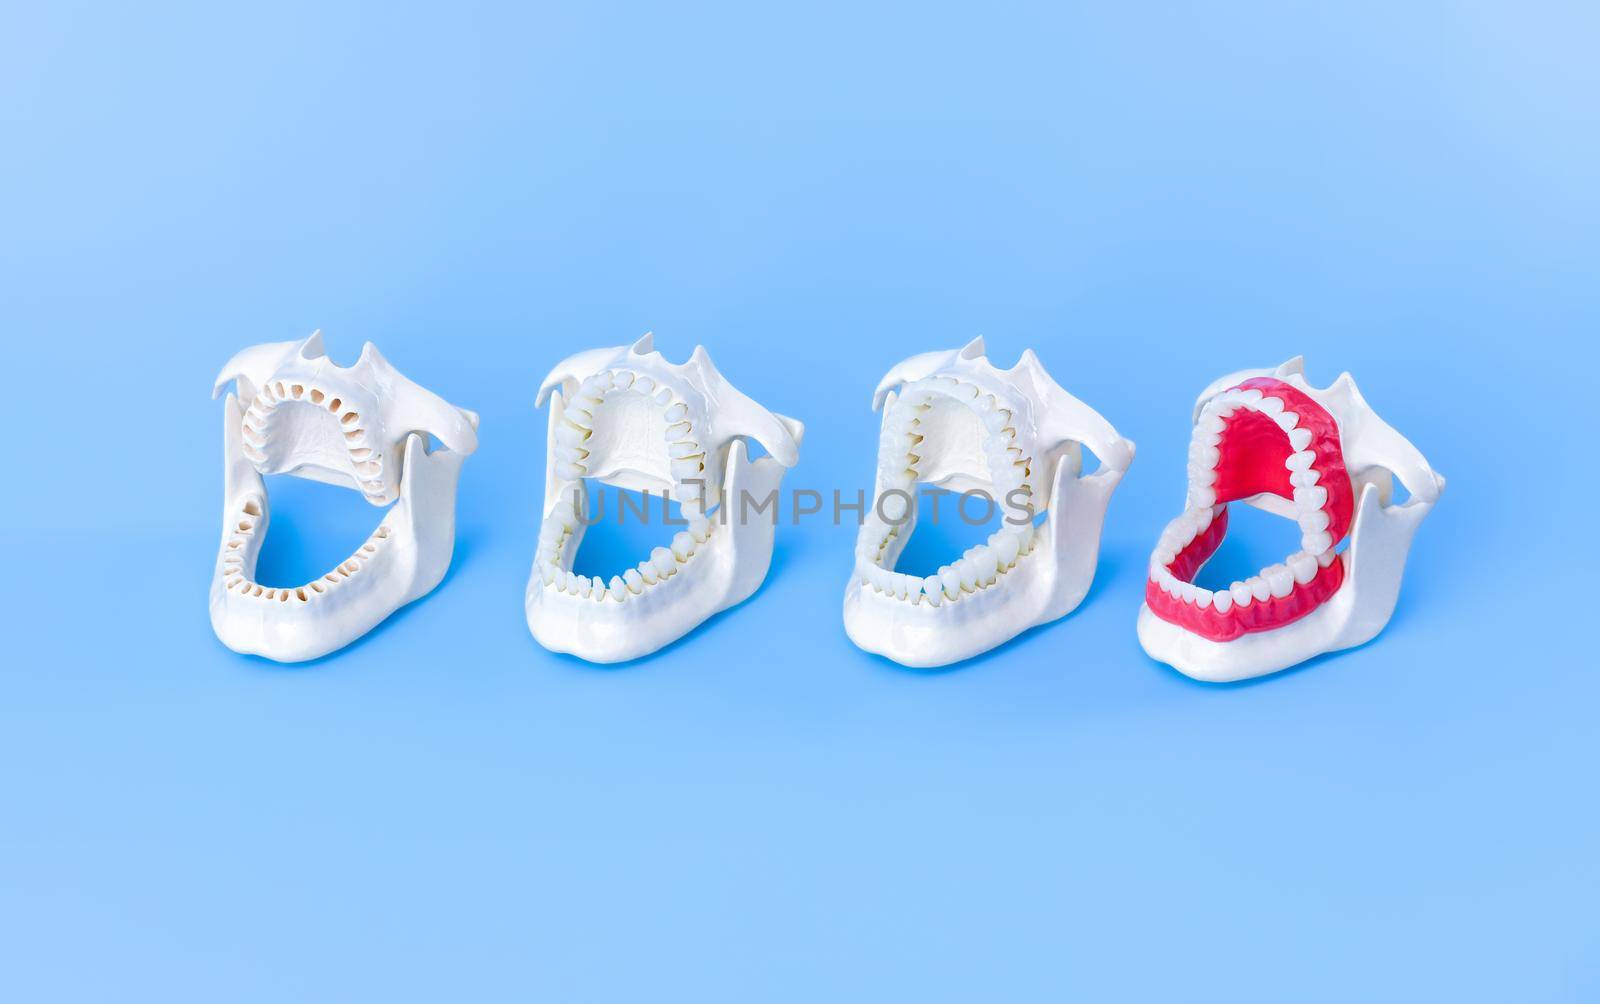 Dentist orthodontic teeth models by dotshock